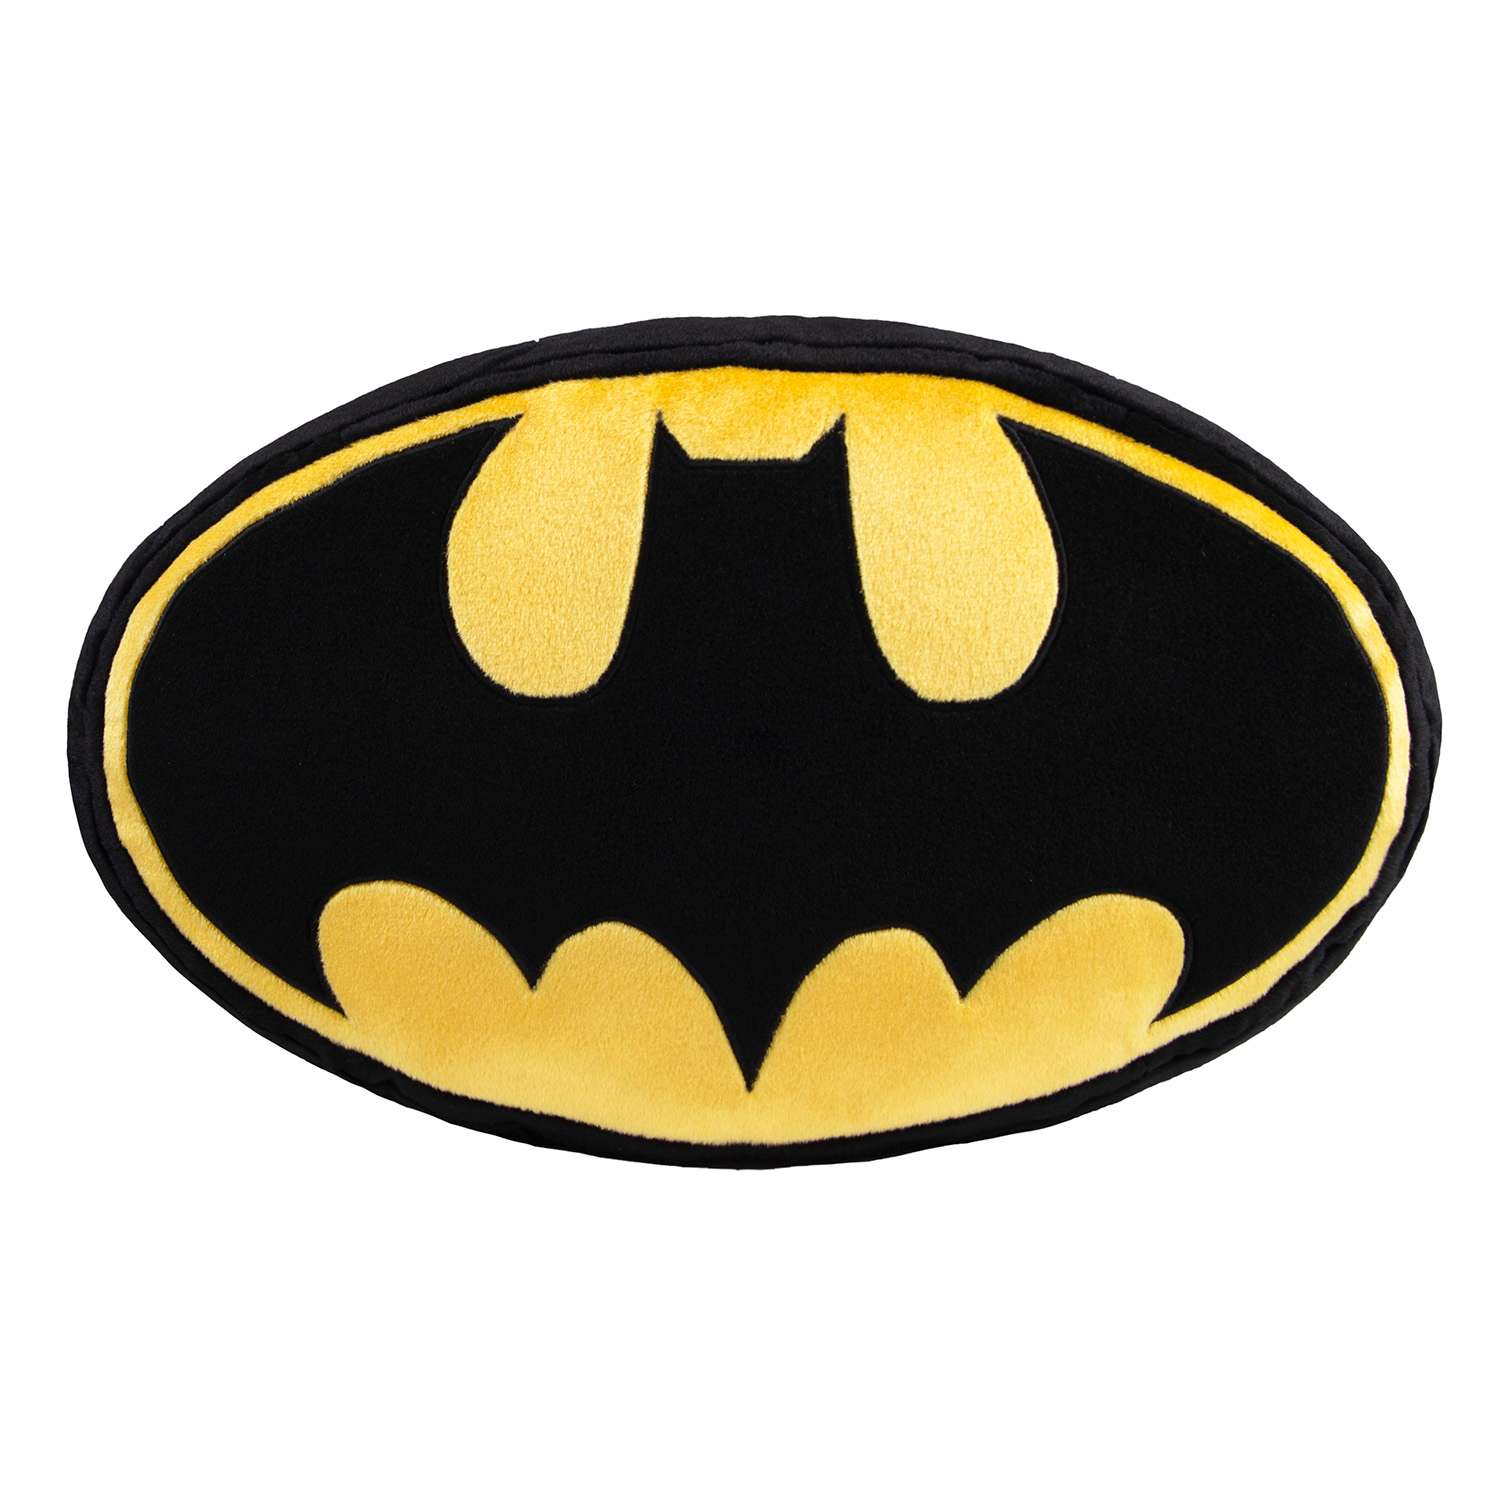 Декоративная подушка DC Batman - фото 1